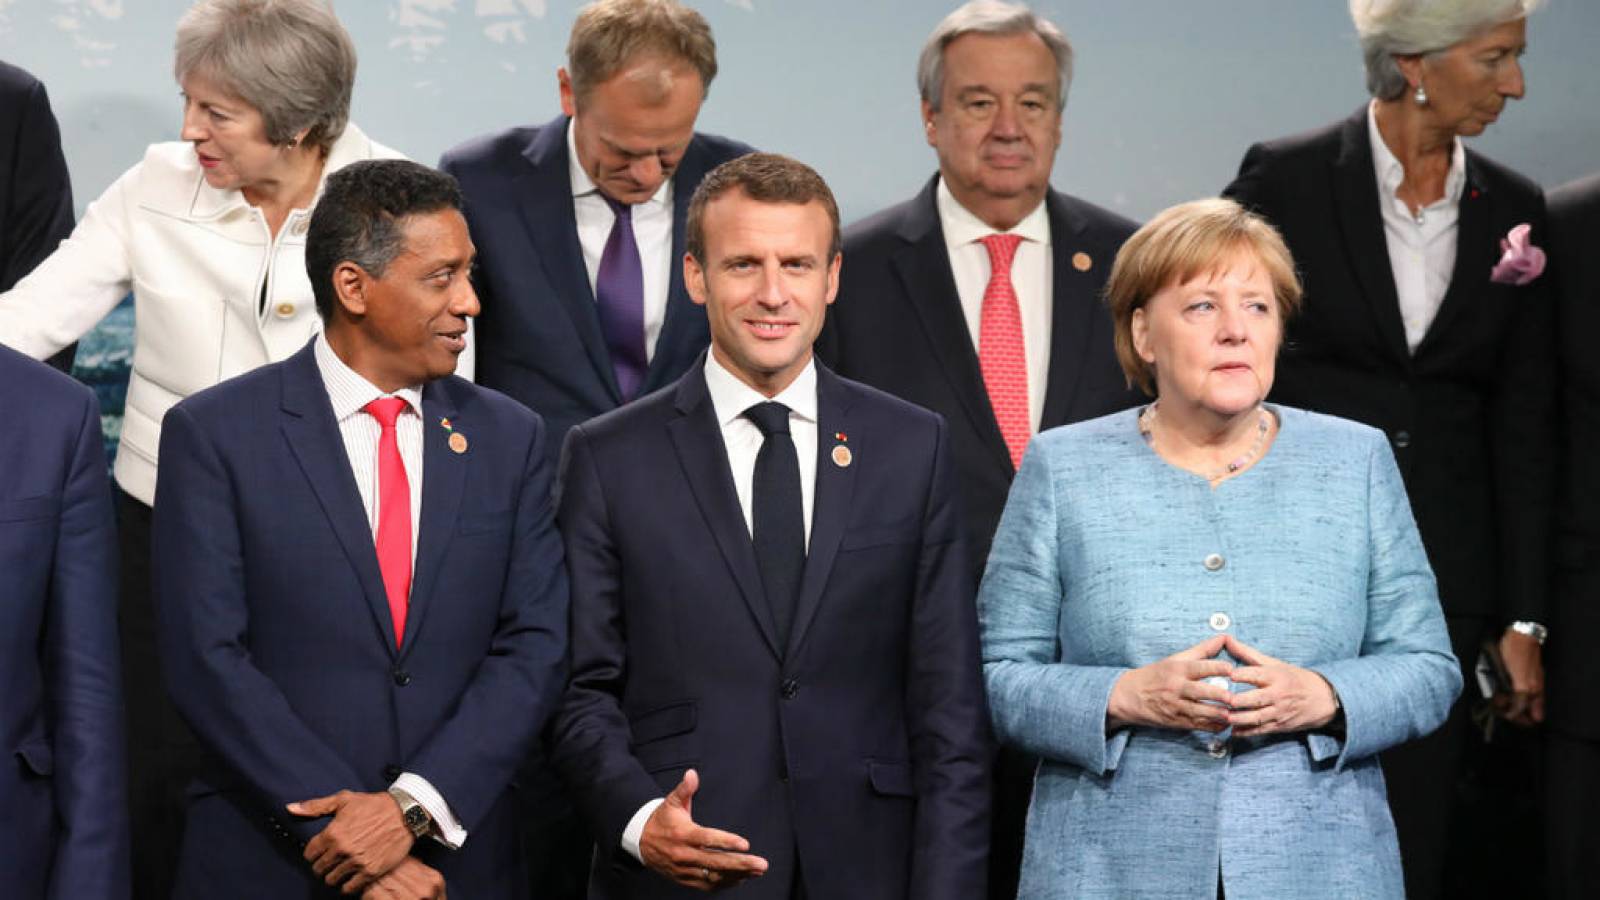 G7 et l'égalité femmes hommes - La catastrophe pressentie est bien réelle